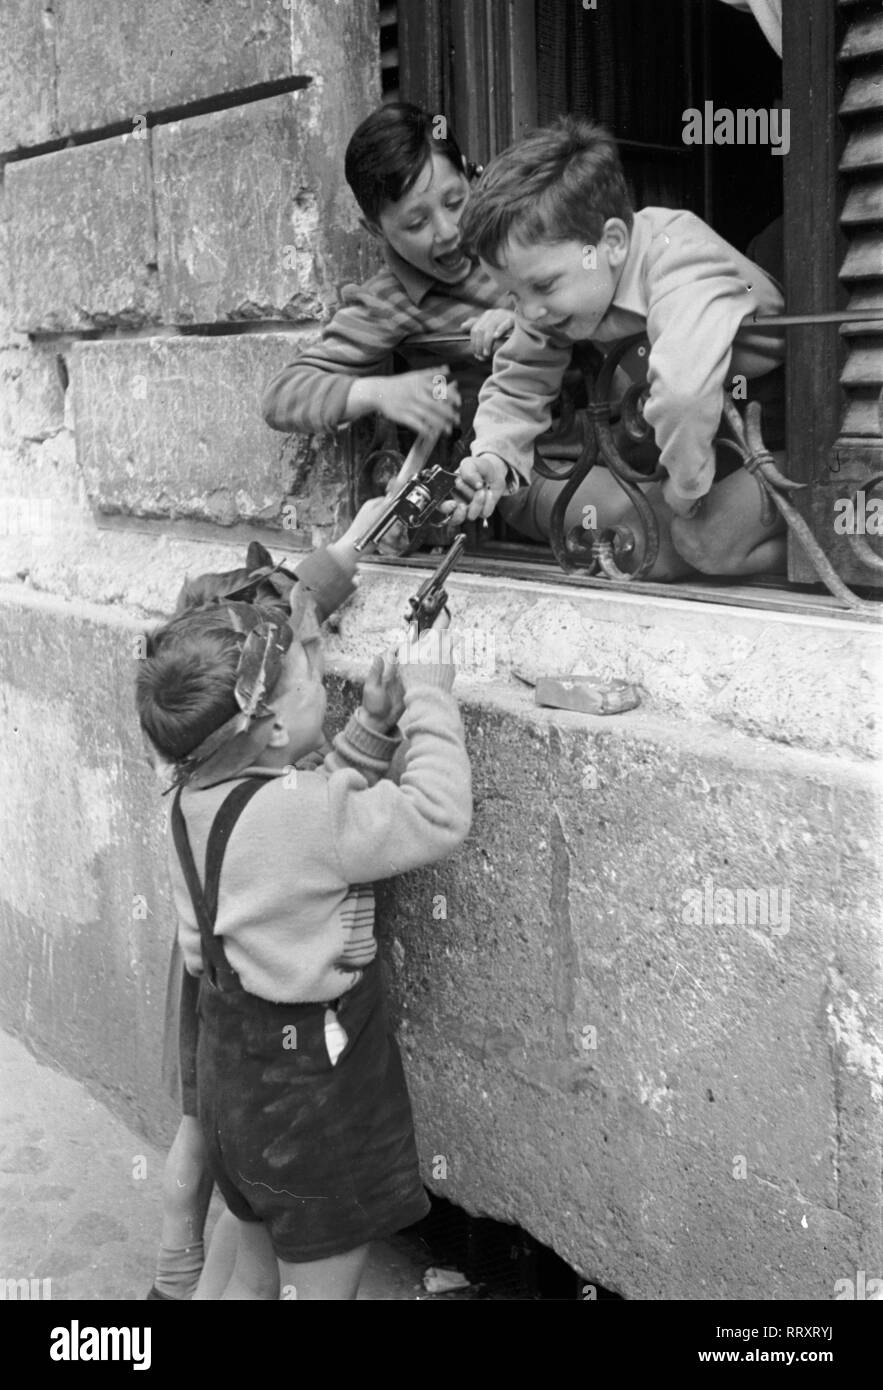 Reisen nach Italien - Italien 1950 - kleine Jungs in Rom spielen mit Spielzeug Pistolen. Kleine Jungen bekämpfen sich mit Spielzeugpistolen in Rom, Italien. Foto Erich Andres Stockfoto